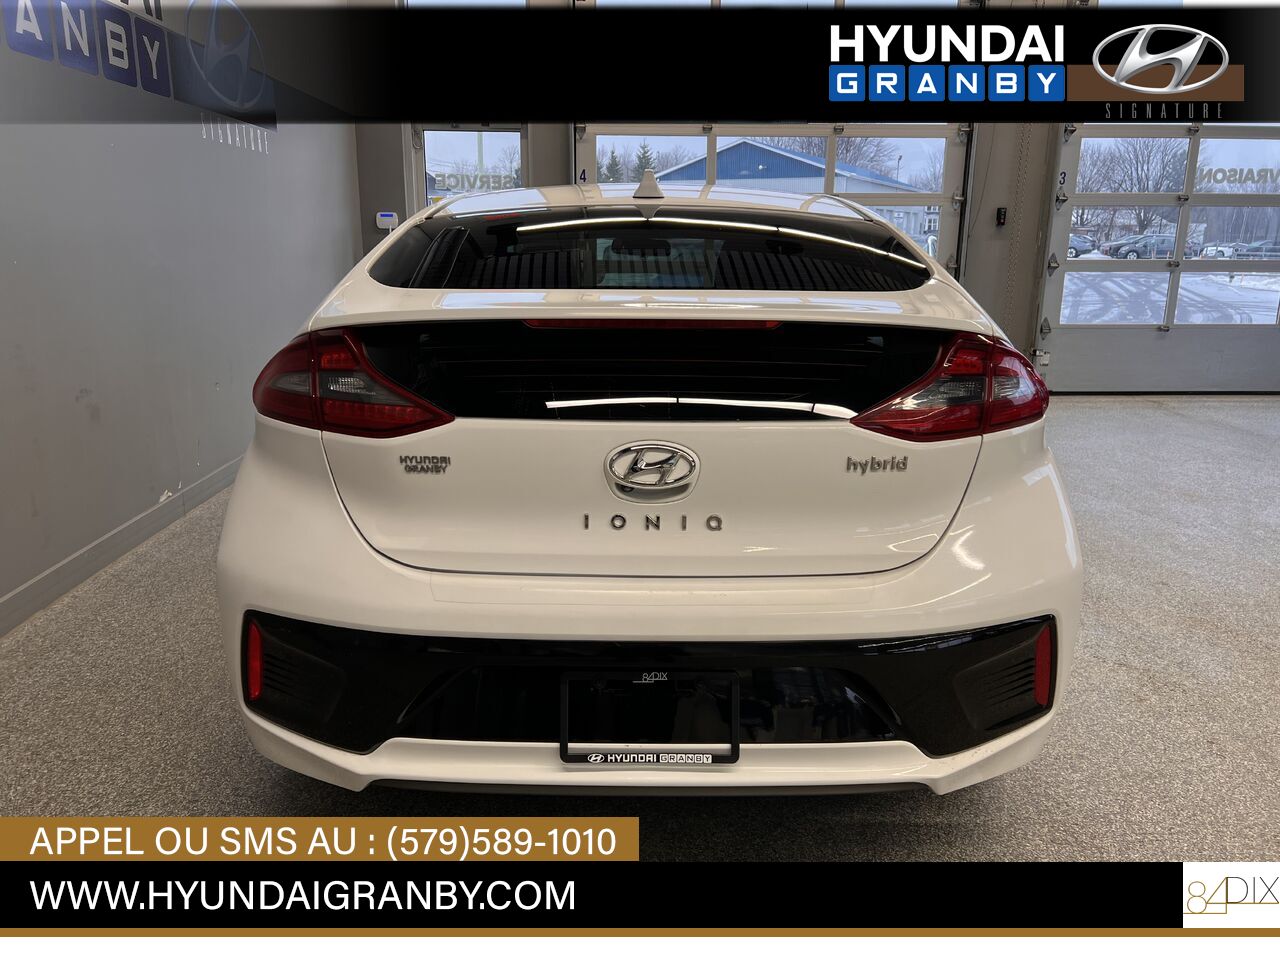 2017 Hyundai Ioniq hybride Granby - photo #5